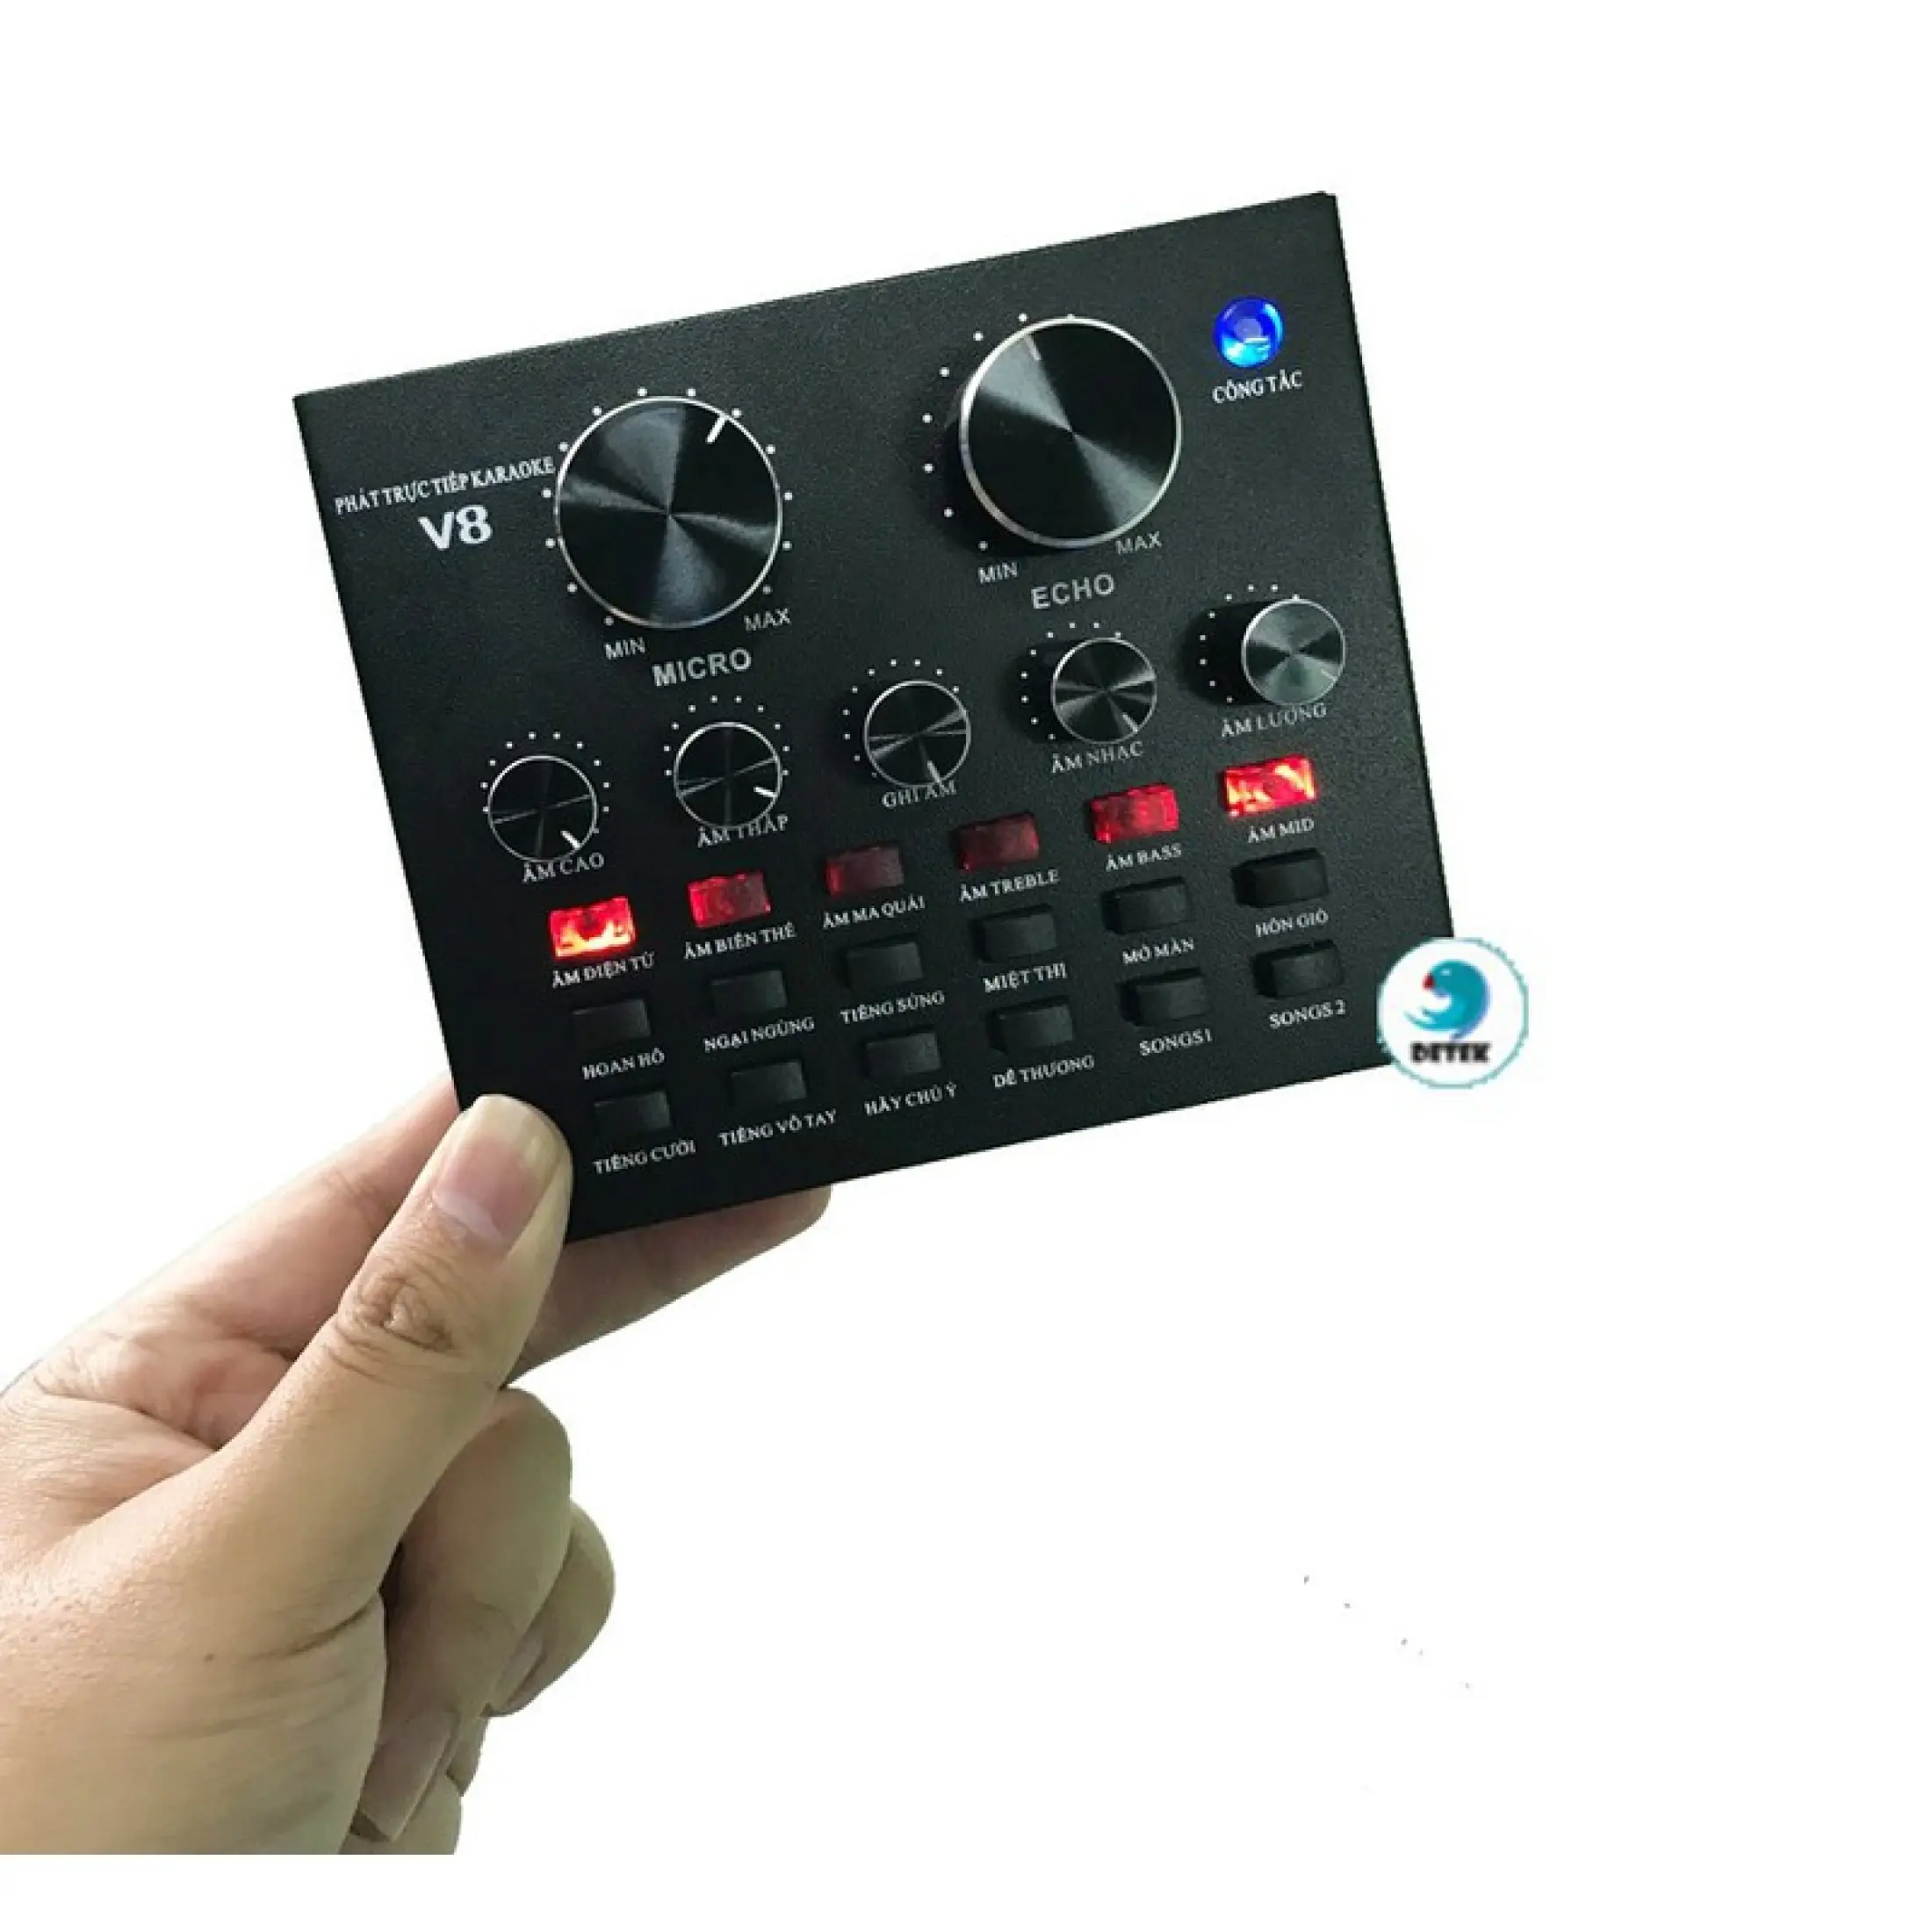 Soundcard Livetream thu âm V8 AUTOTUNE CÓ BLUETOOTH kết hợp mic BM900 AT100... Bảo hành